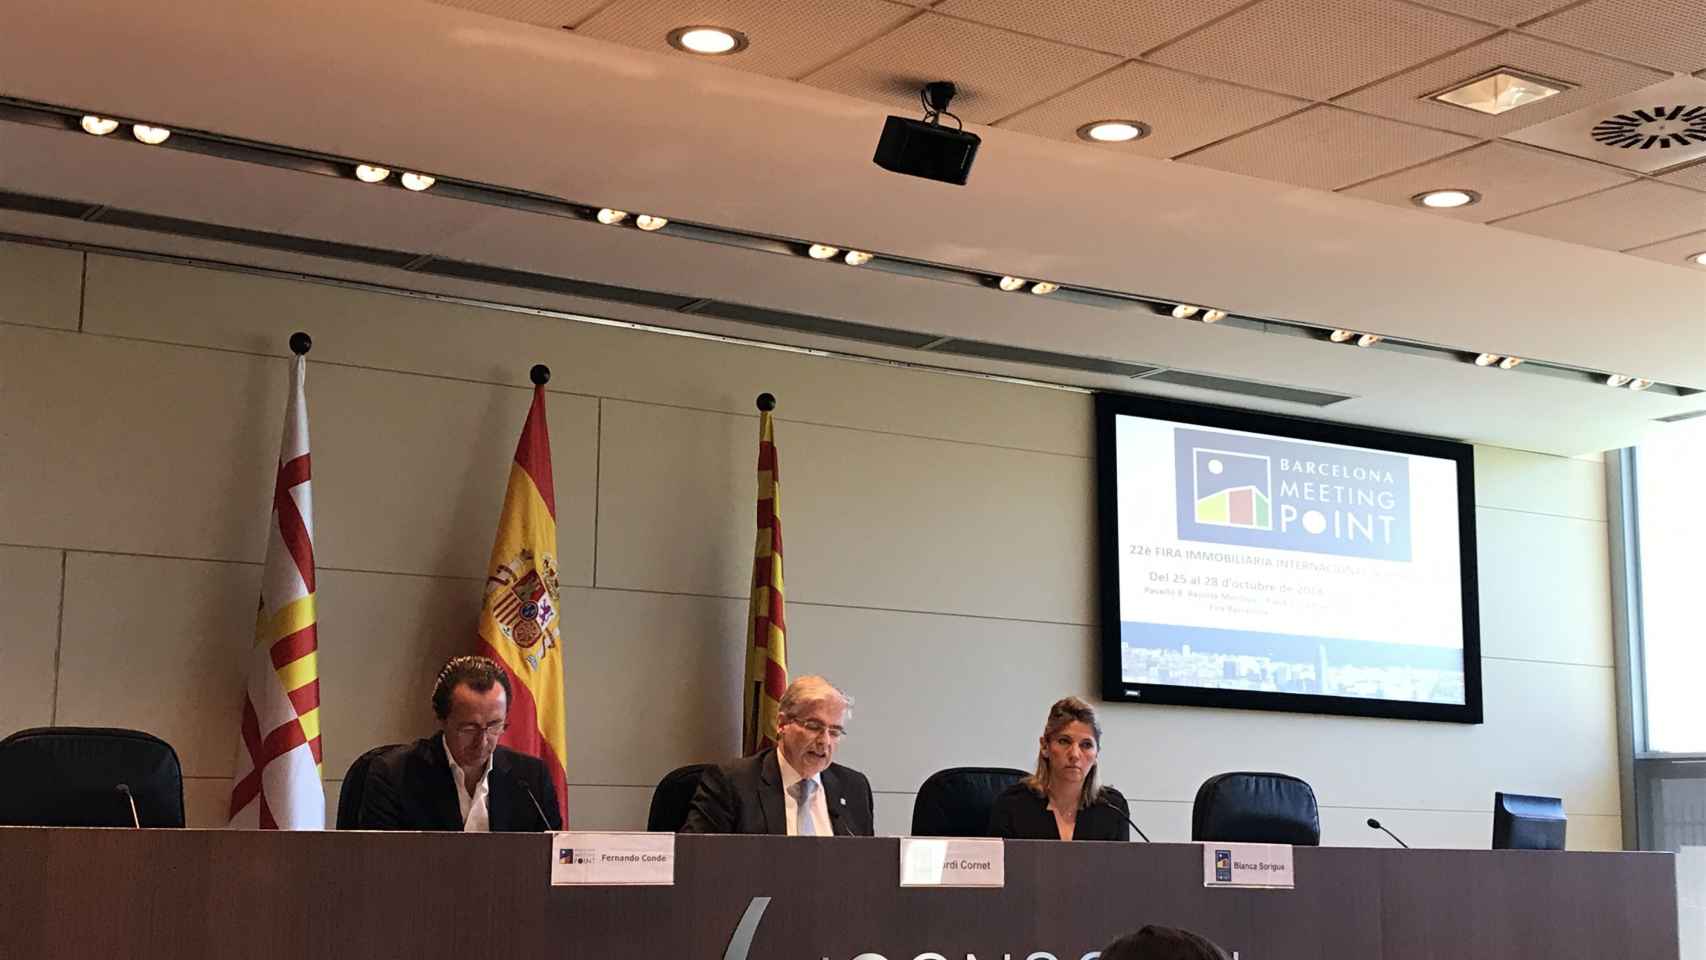 Presentación de la feria inmobiliaria Barcelona Meeting Point (BMP) / CG